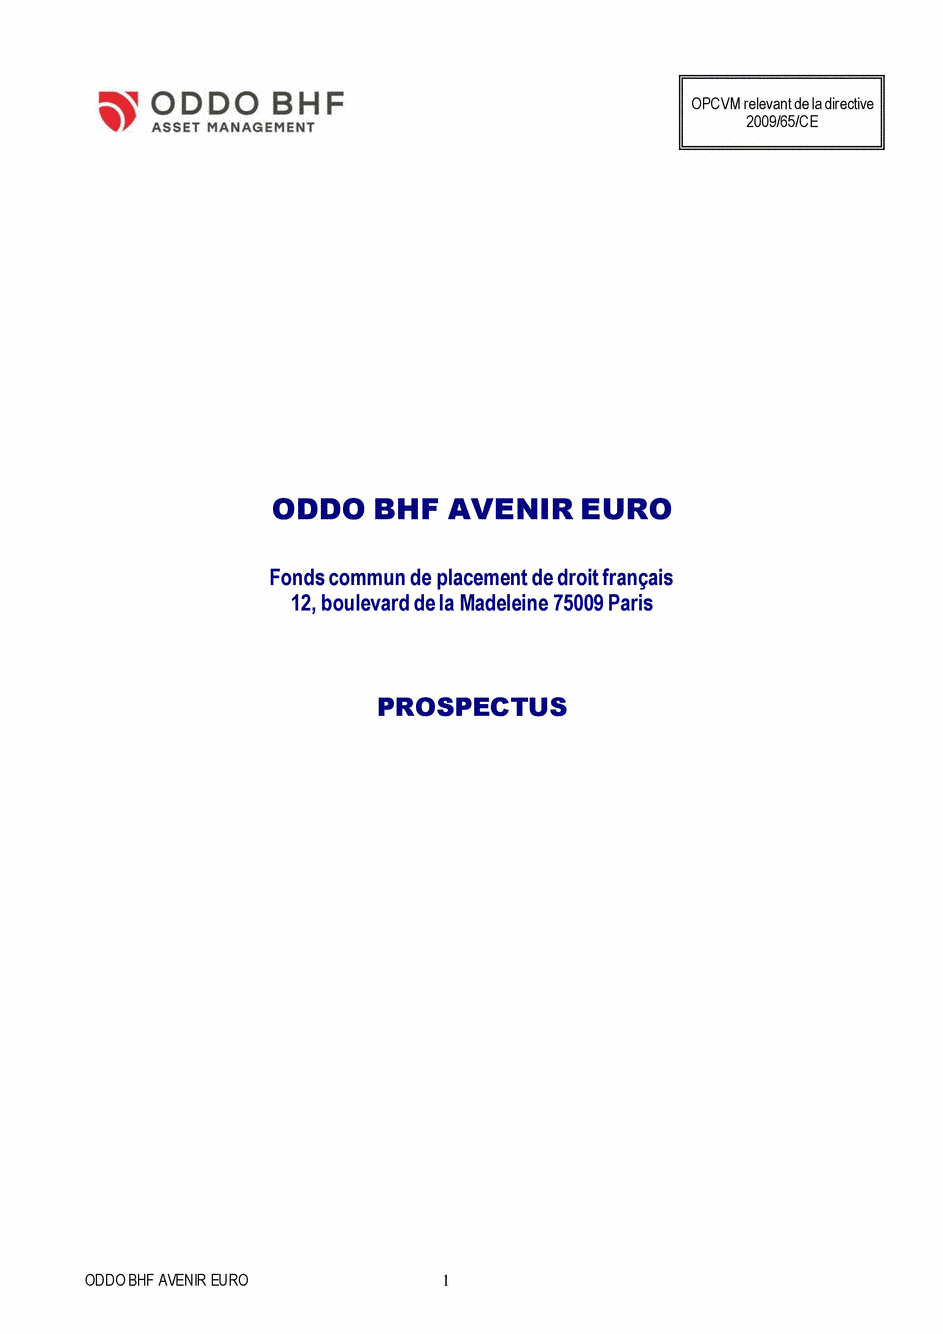 Prospectus ODDO BHF AVENIR EURO CR-EUR - 31/03/2020 - Français